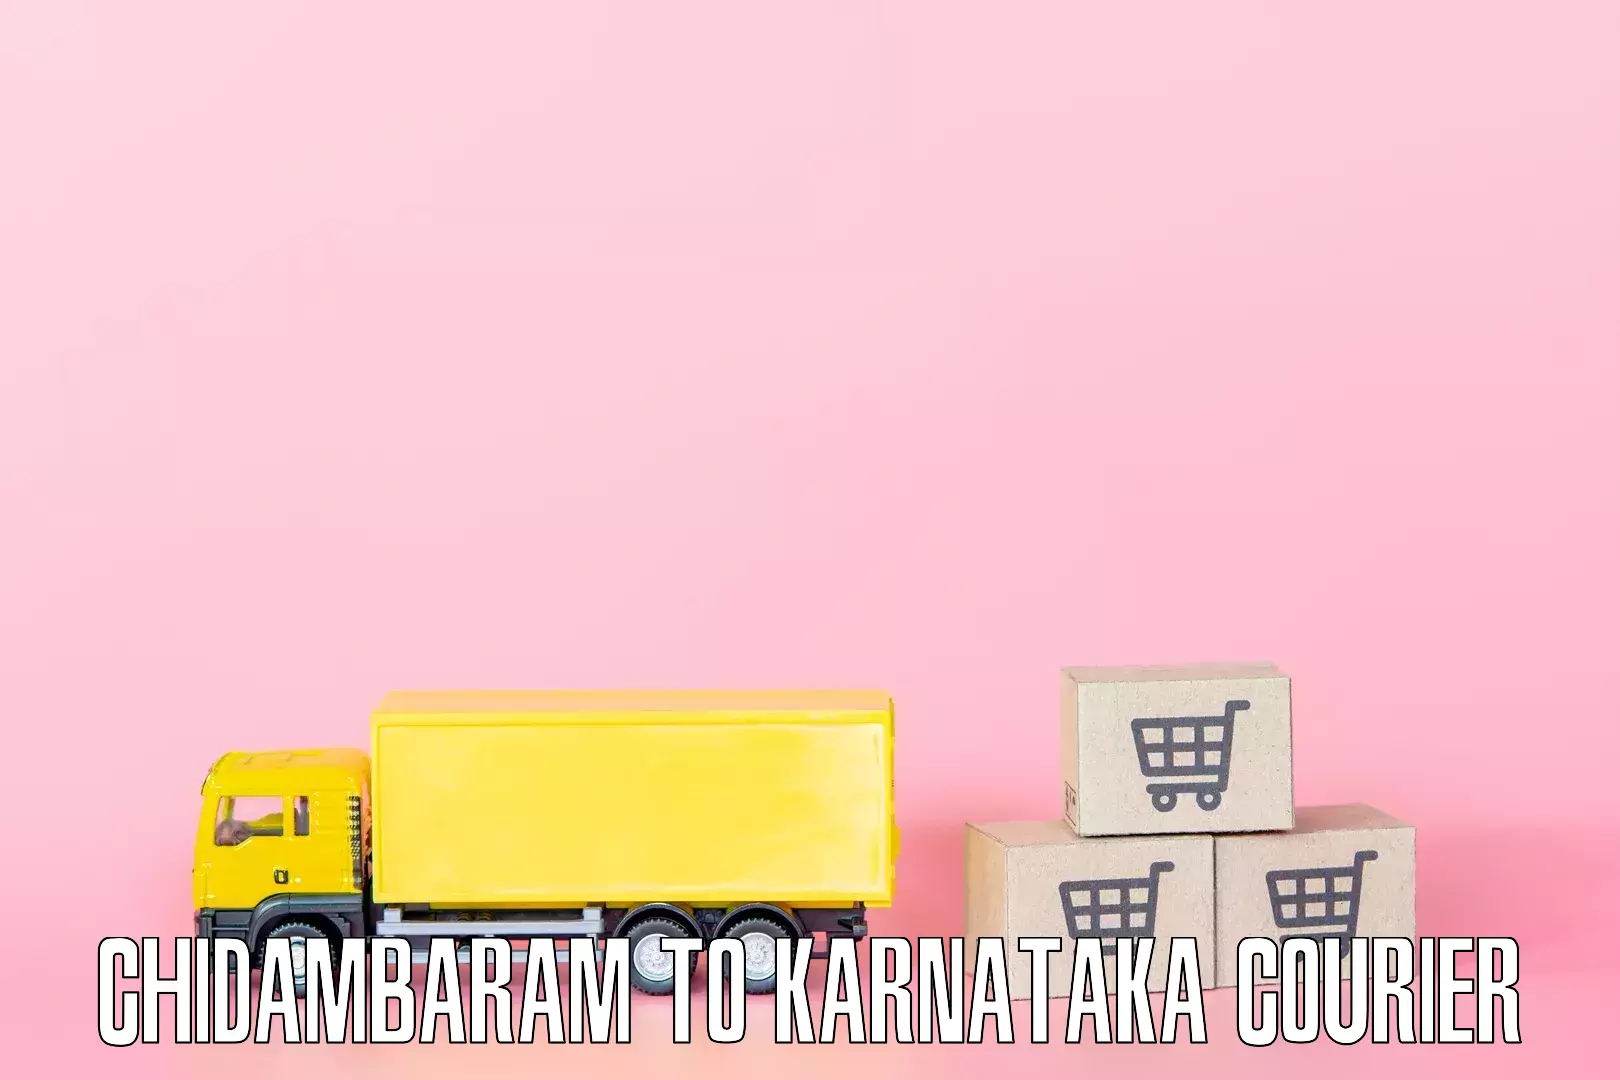 Professional furniture transport in Chidambaram to Karnataka